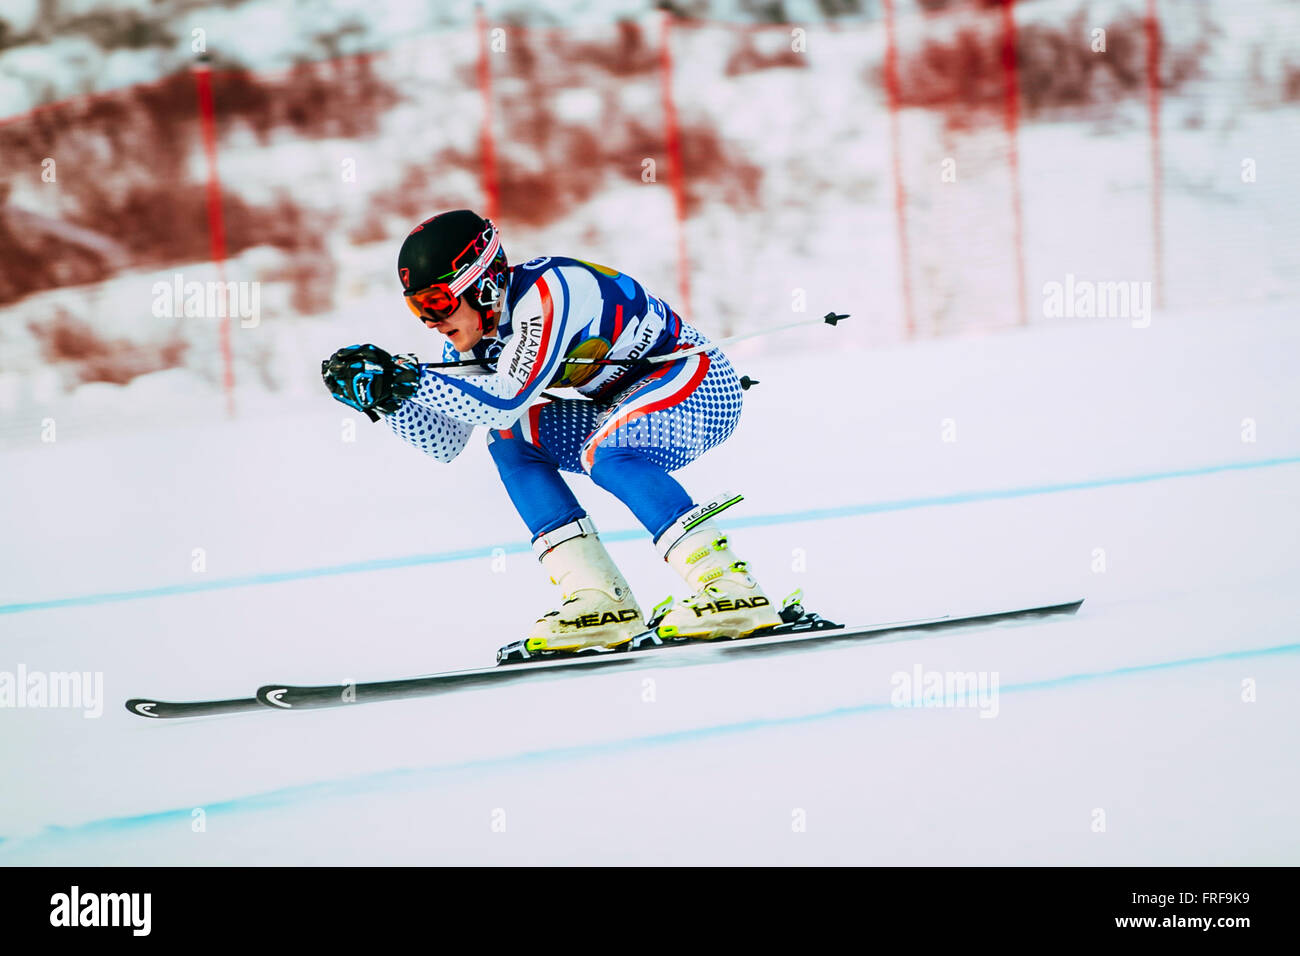 Jeune athlète masculin de Coupe de Russie au cours de la descente en ski alpin Banque D'Images